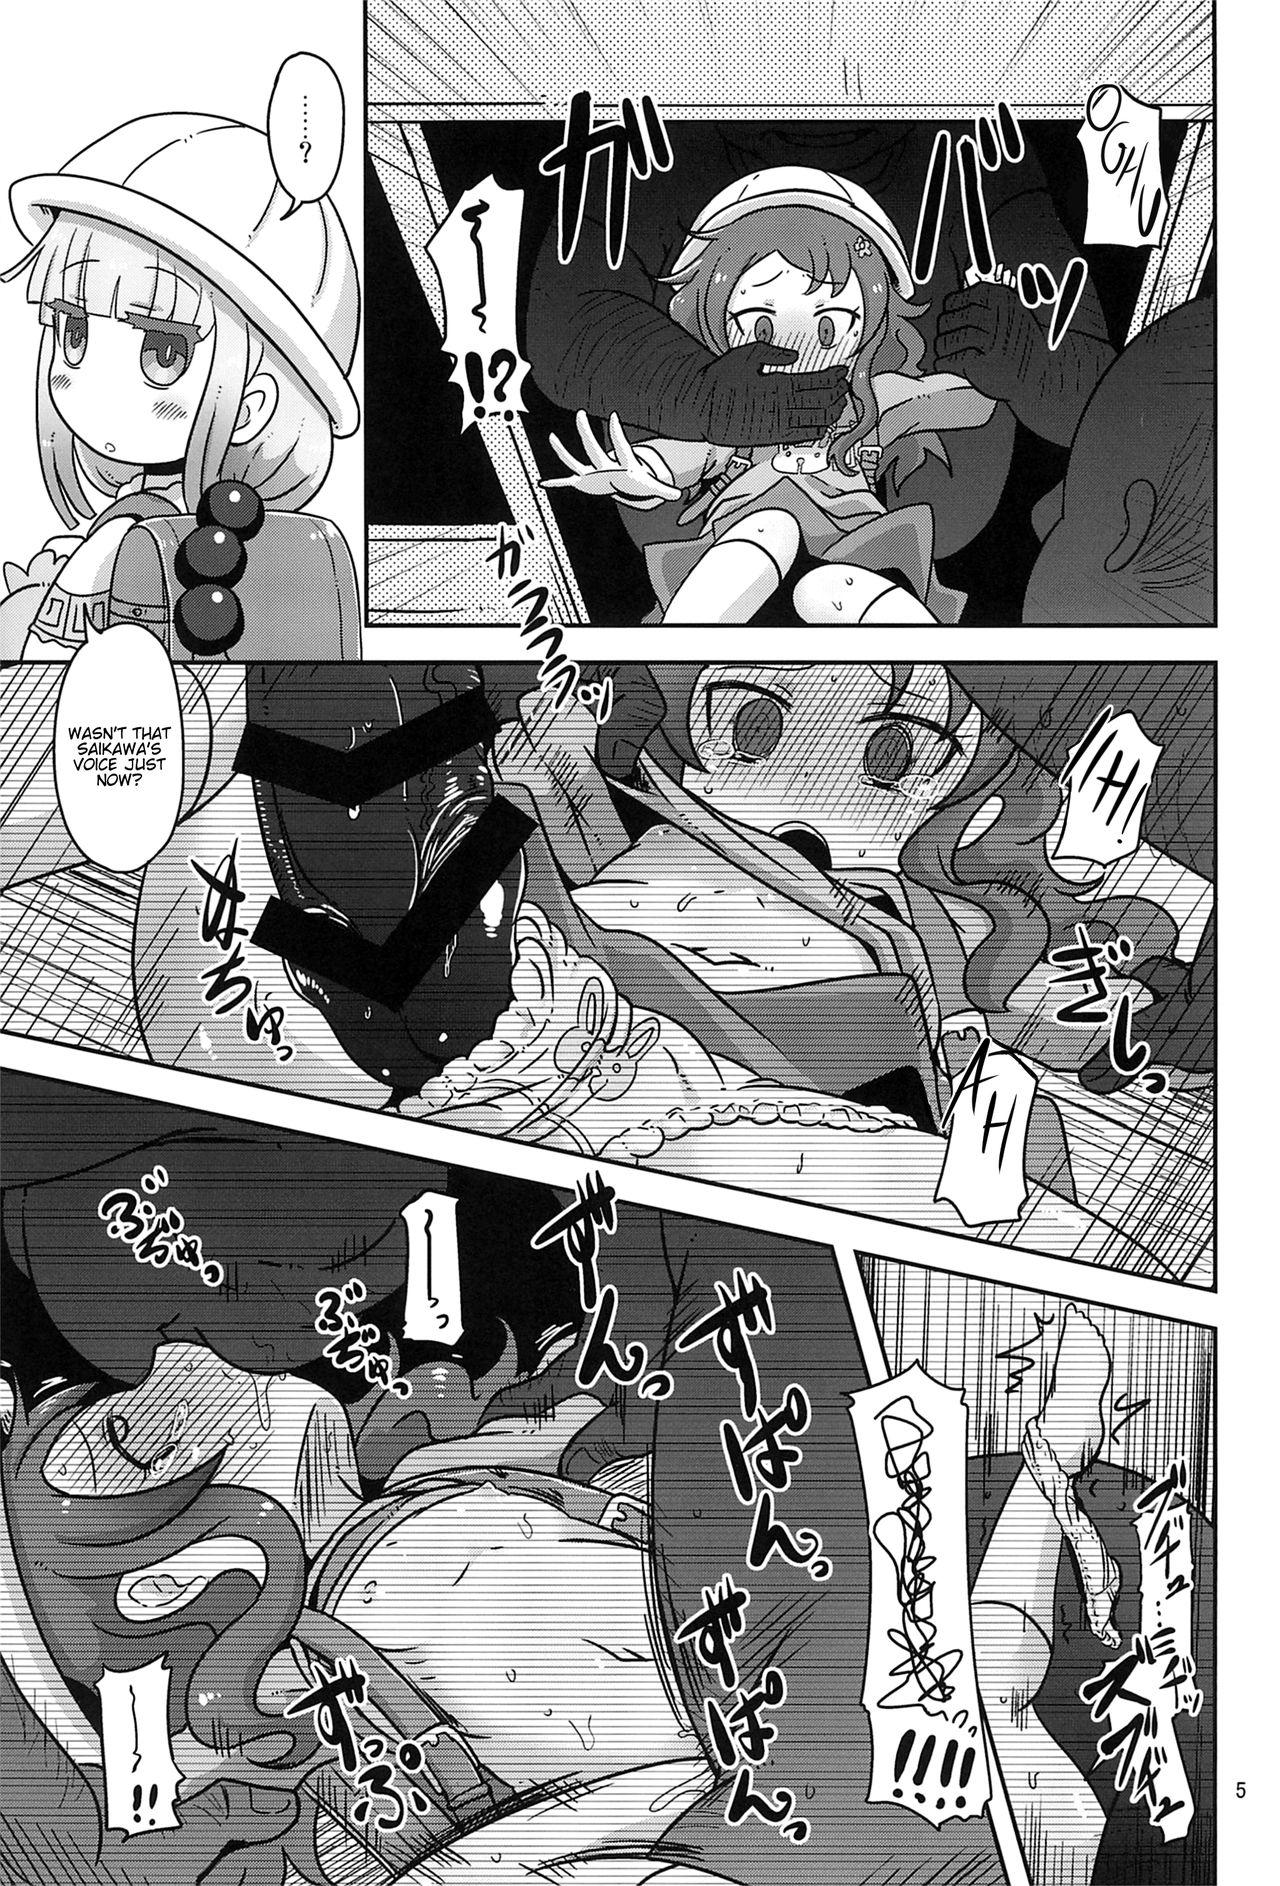 Hidden Dragonic Lolita Bomb! - Kobayashi-san-chi no maid dragon Cruising - Page 5